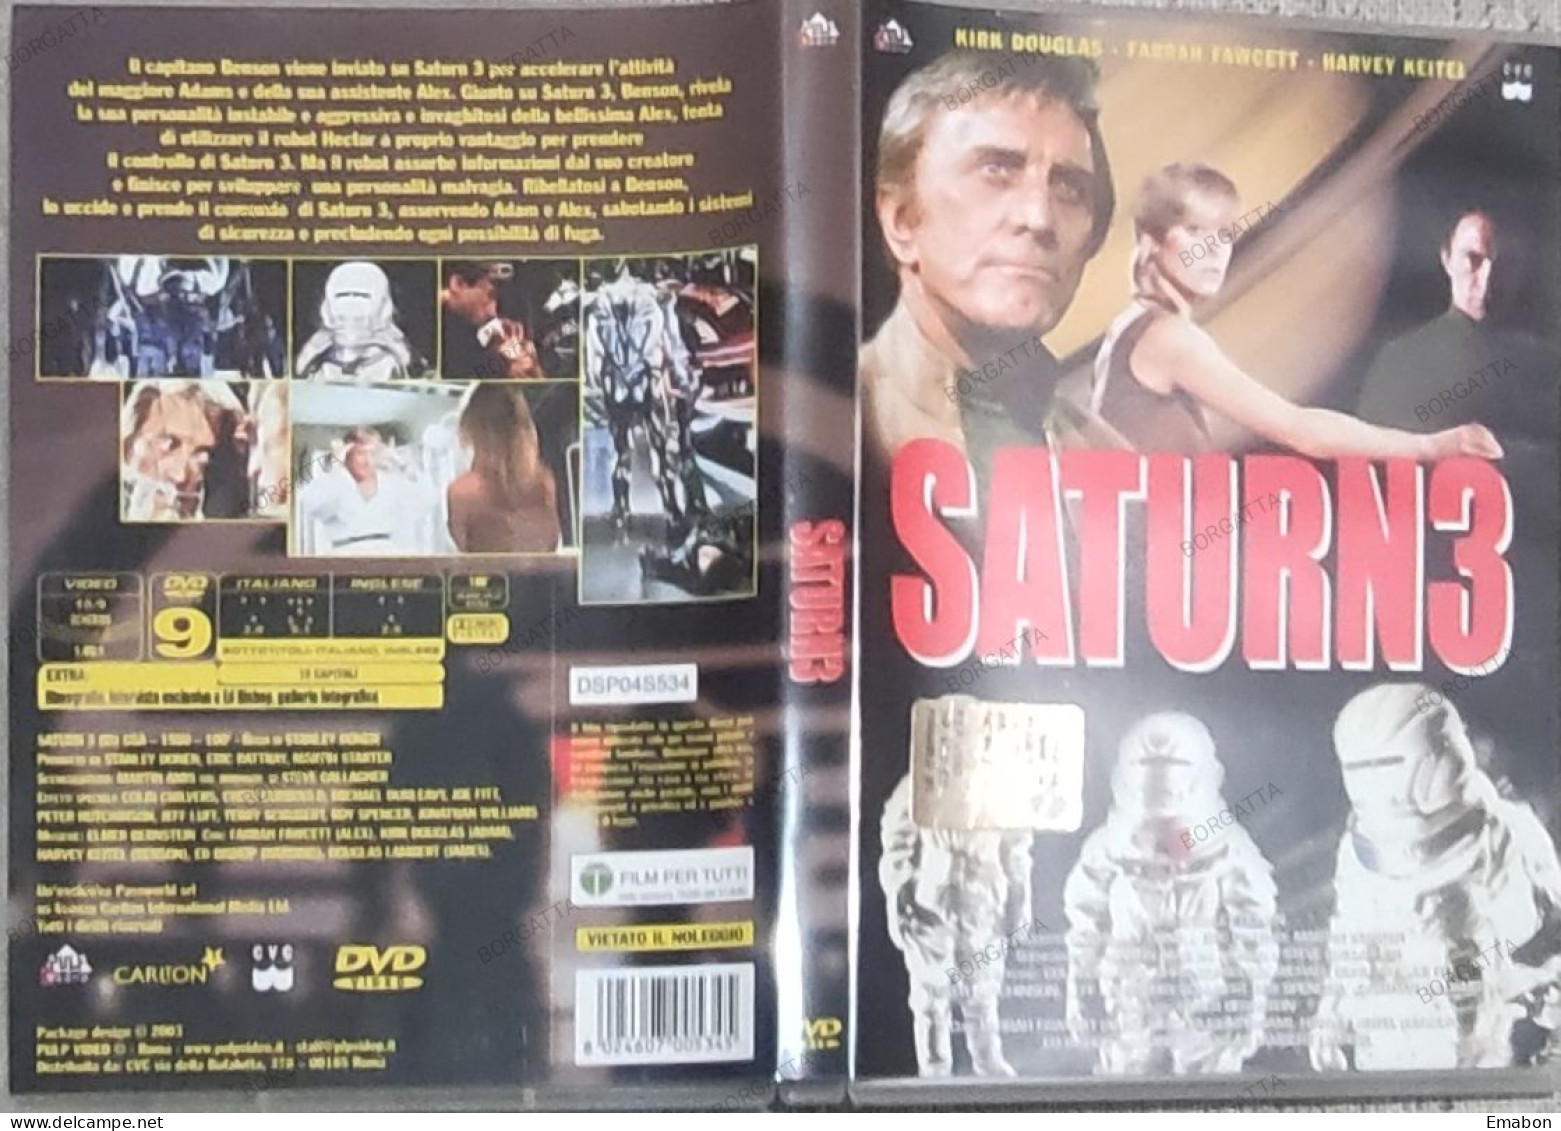 BORGATTA - FANTASCIENZA - DVD SATURN 3  - PAL 2 - PULP VIDEO 2003 - USATO In Buono Stato - Fantascienza E Fanstasy